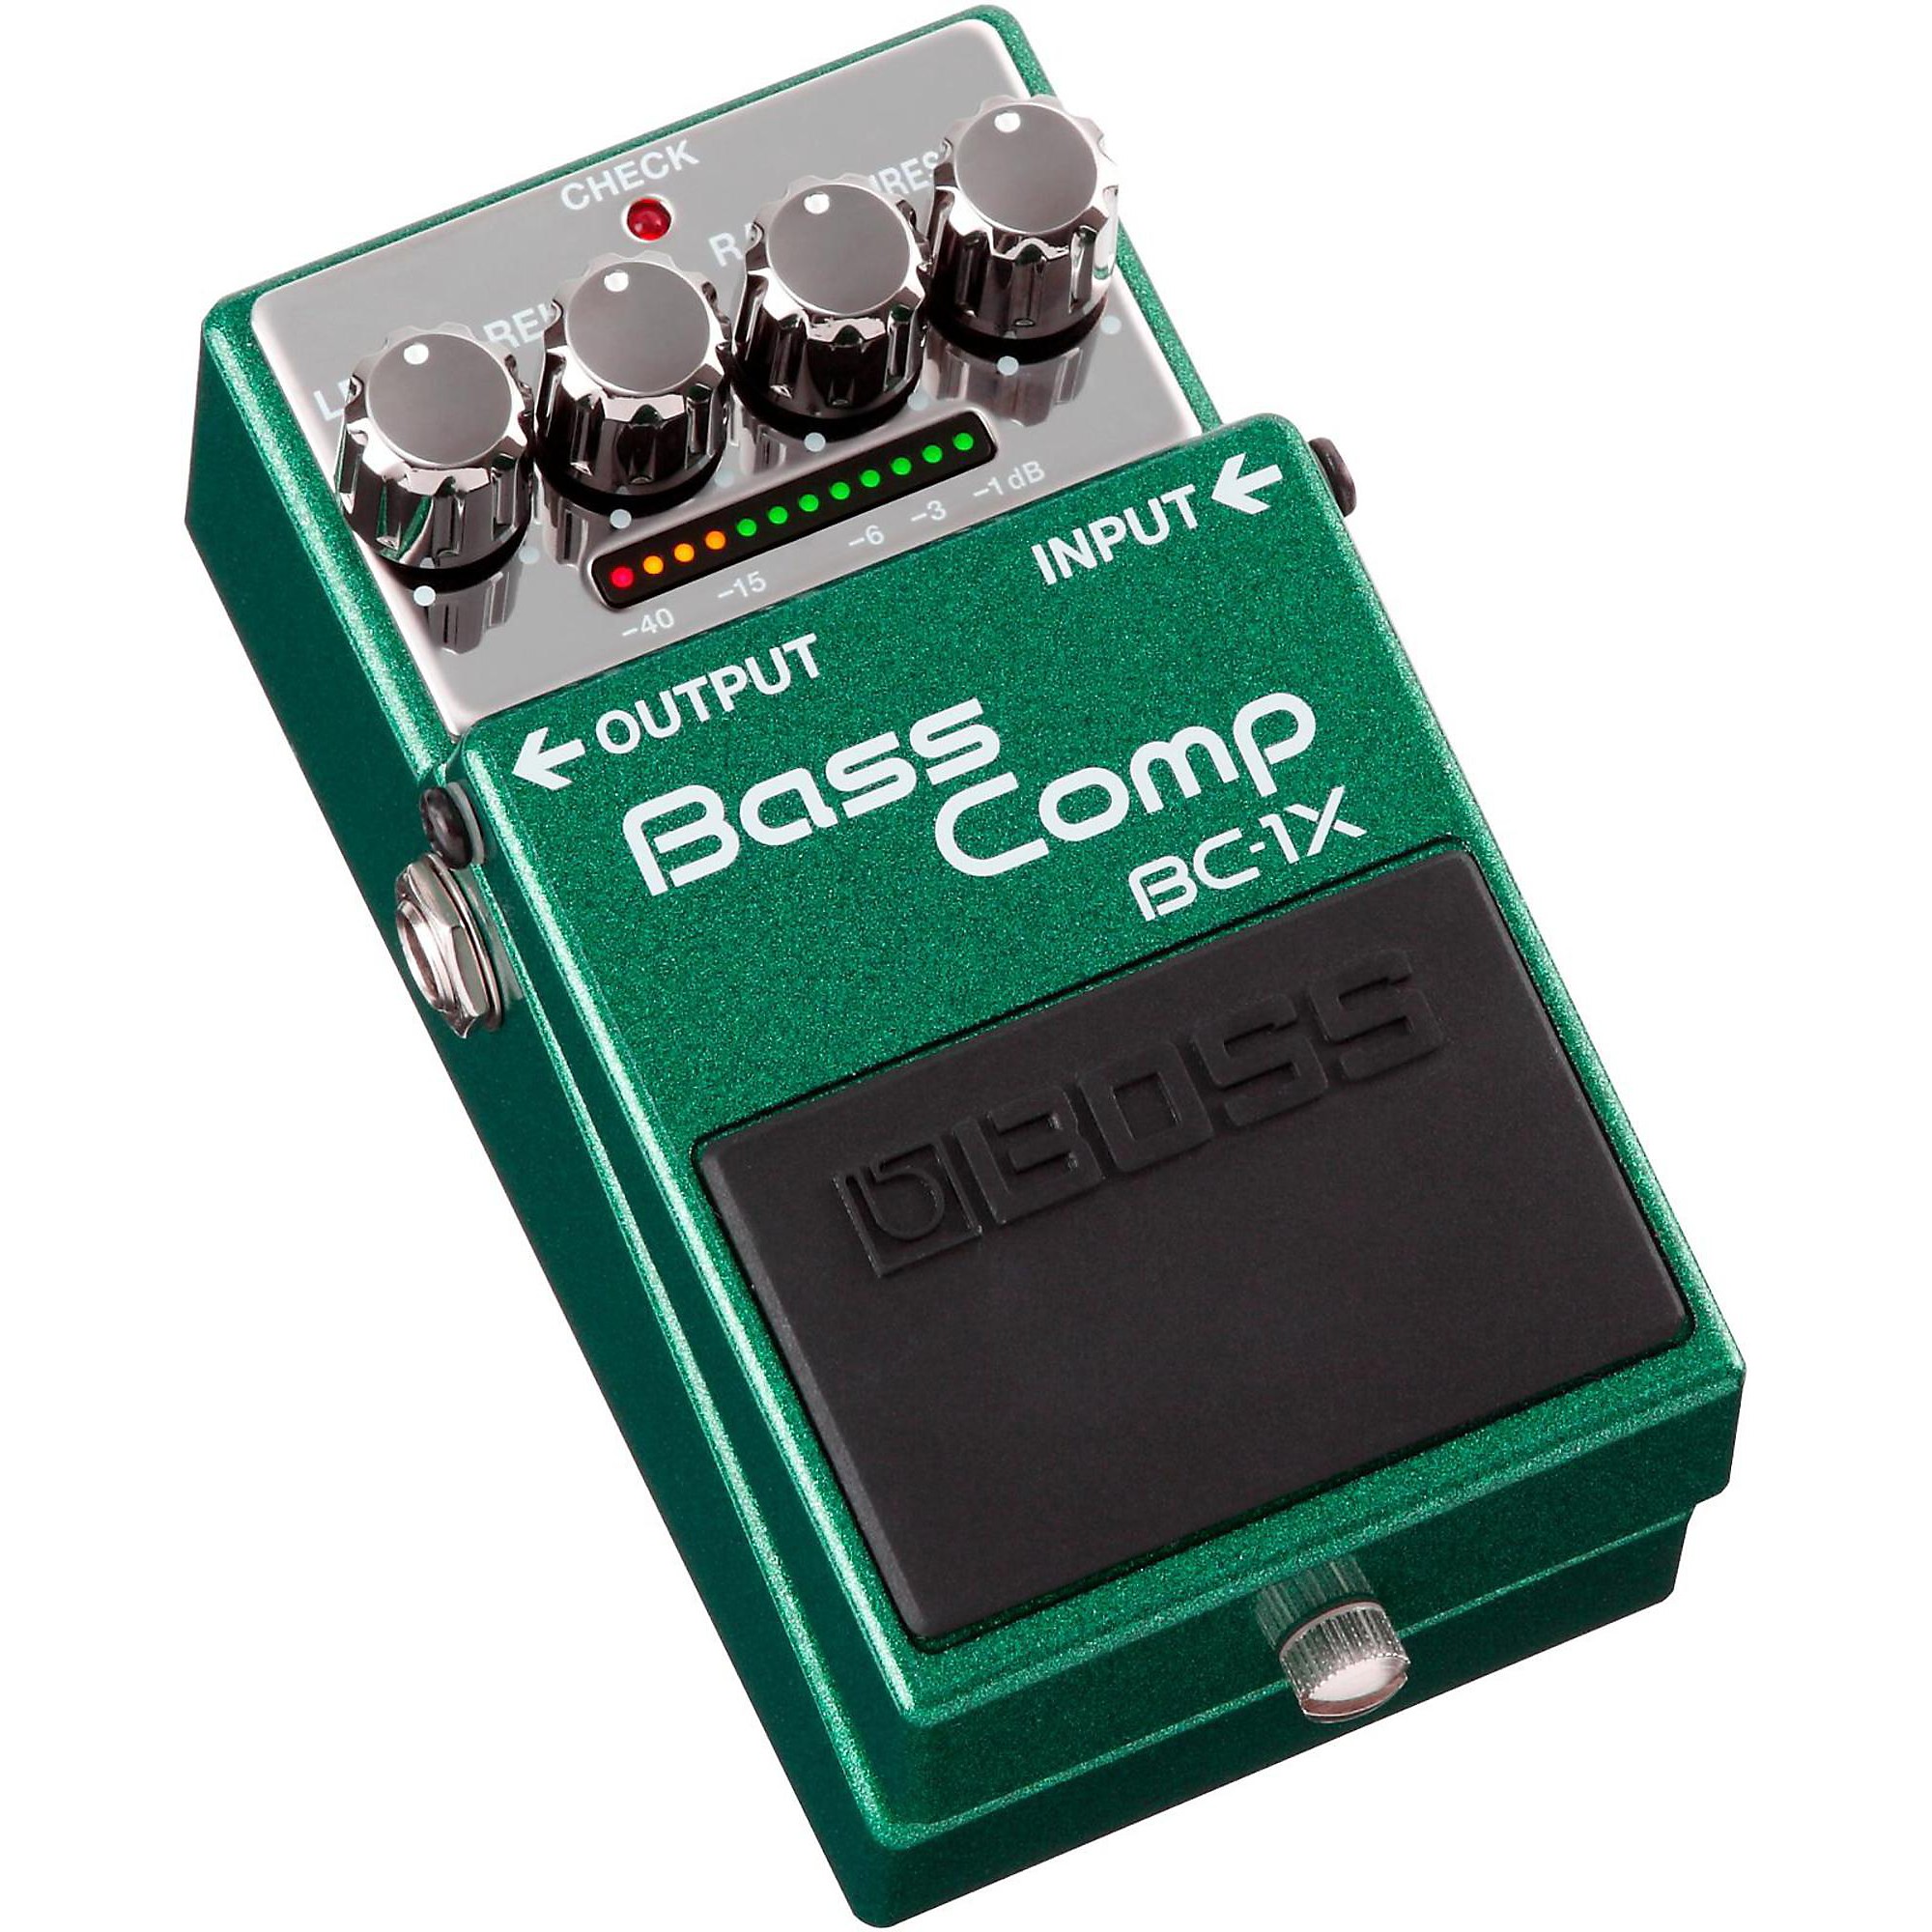 BOSS BC-1X Bass Compressor Effects Pedal | Guitar Center